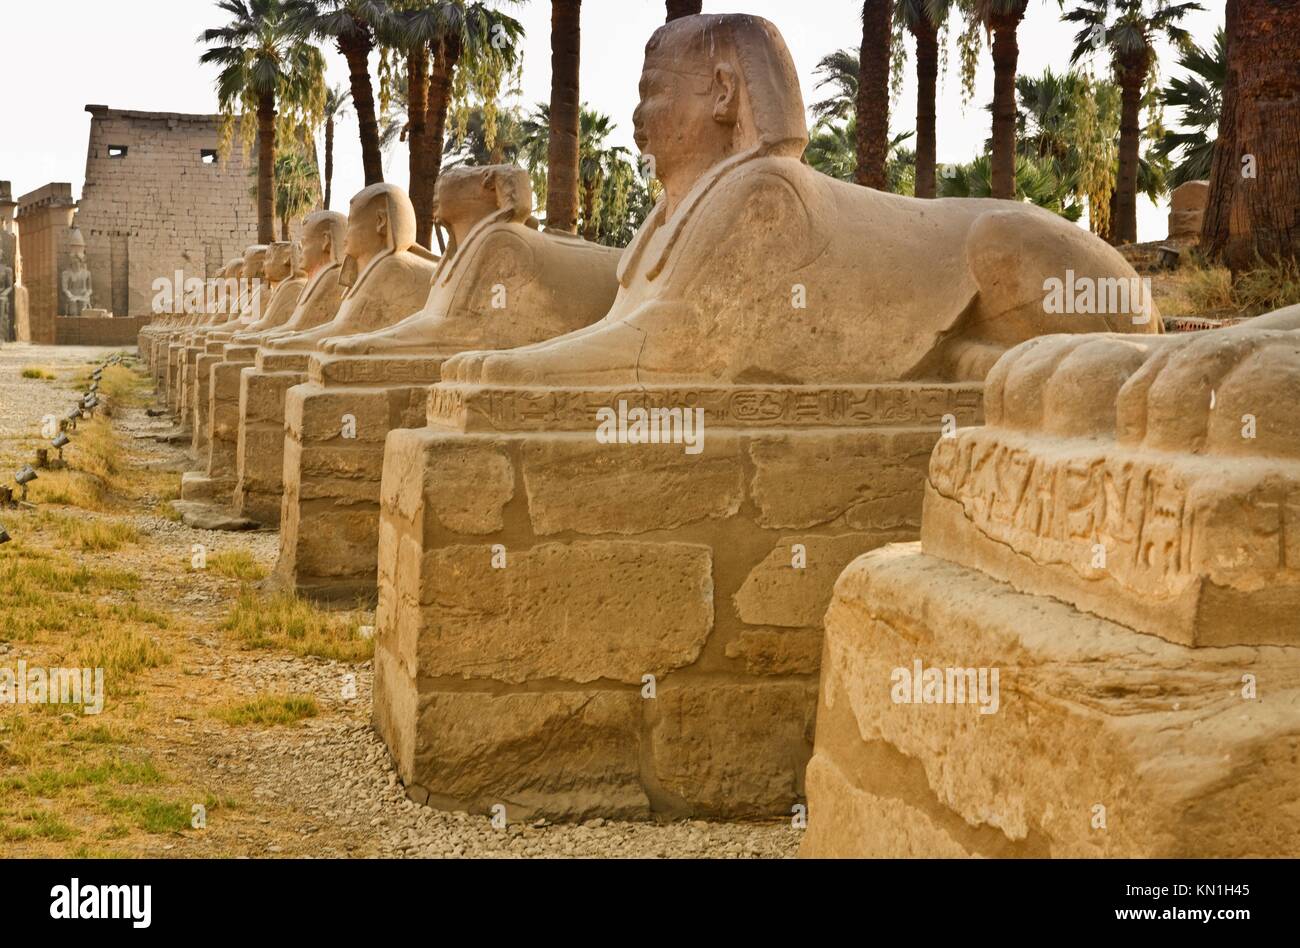 La avenida de esfinges formando parte del templo de Luxor en Egipto. Foto de stock